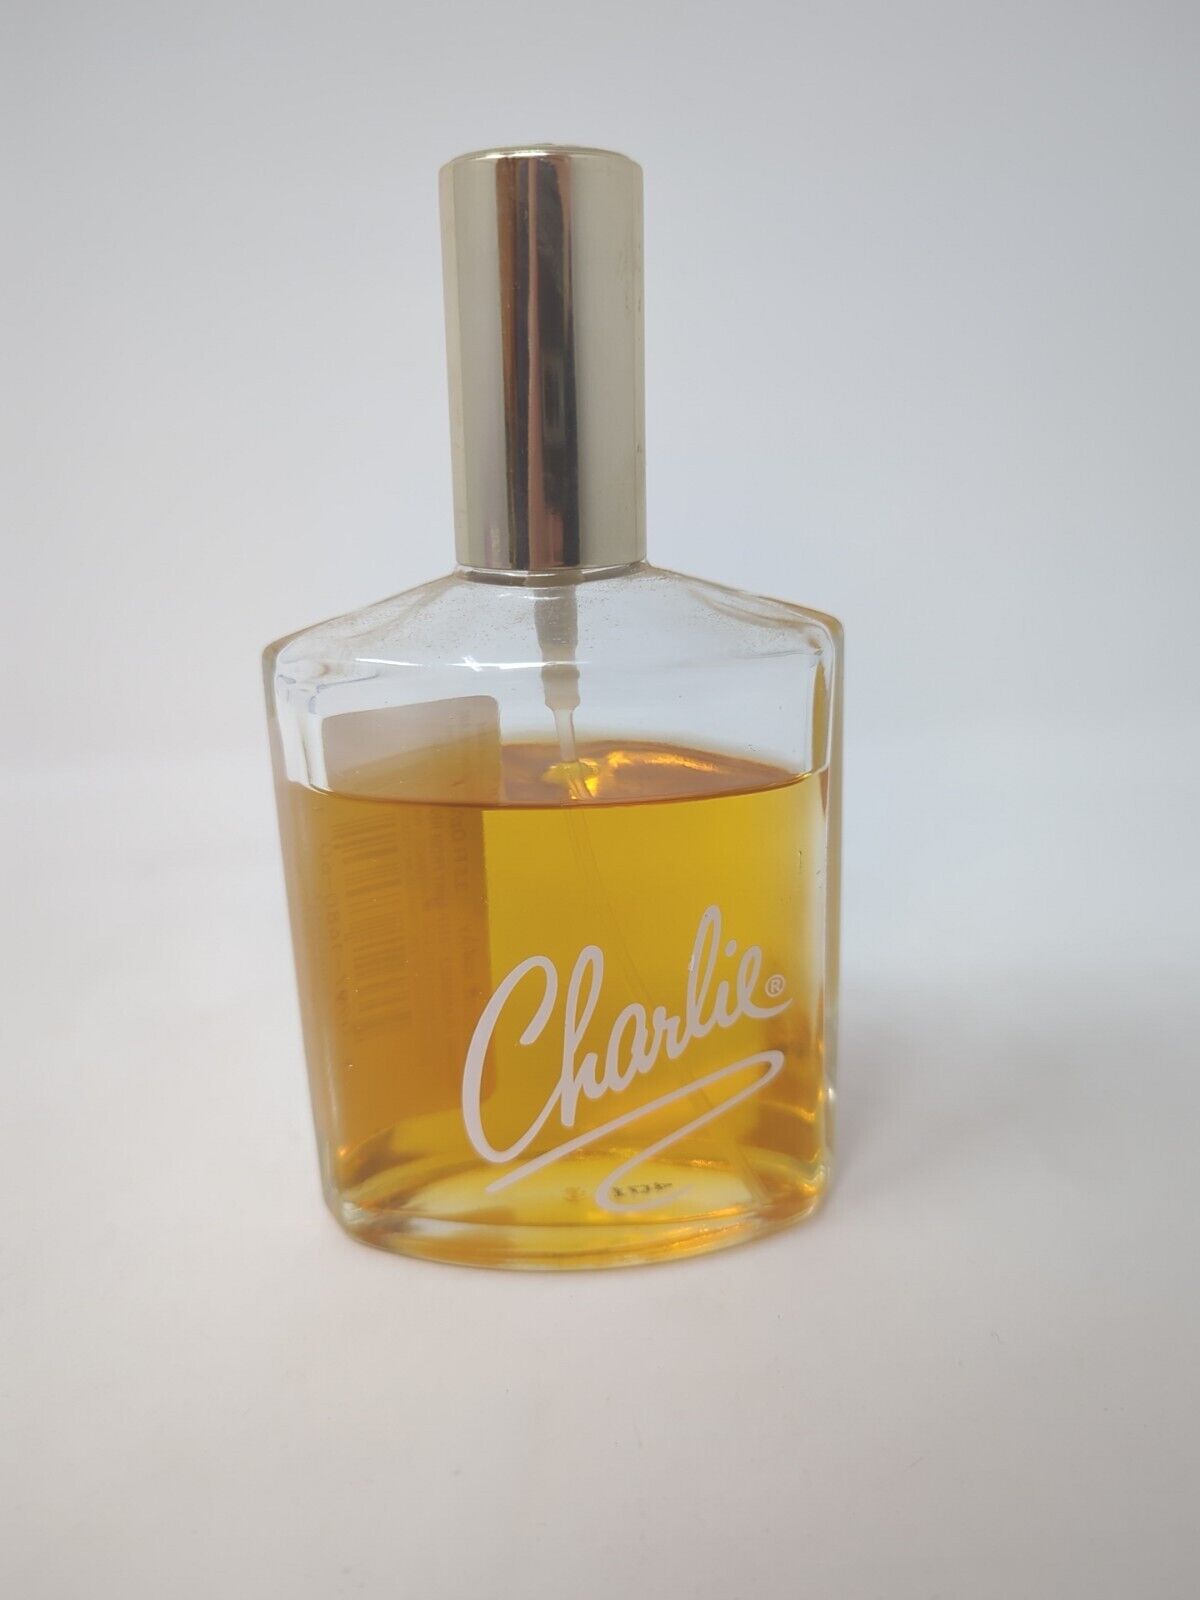 Charlie Original Cologne Spray by Revlon 3.5fl oz 103.5 mL Perfume Fragranc80% 